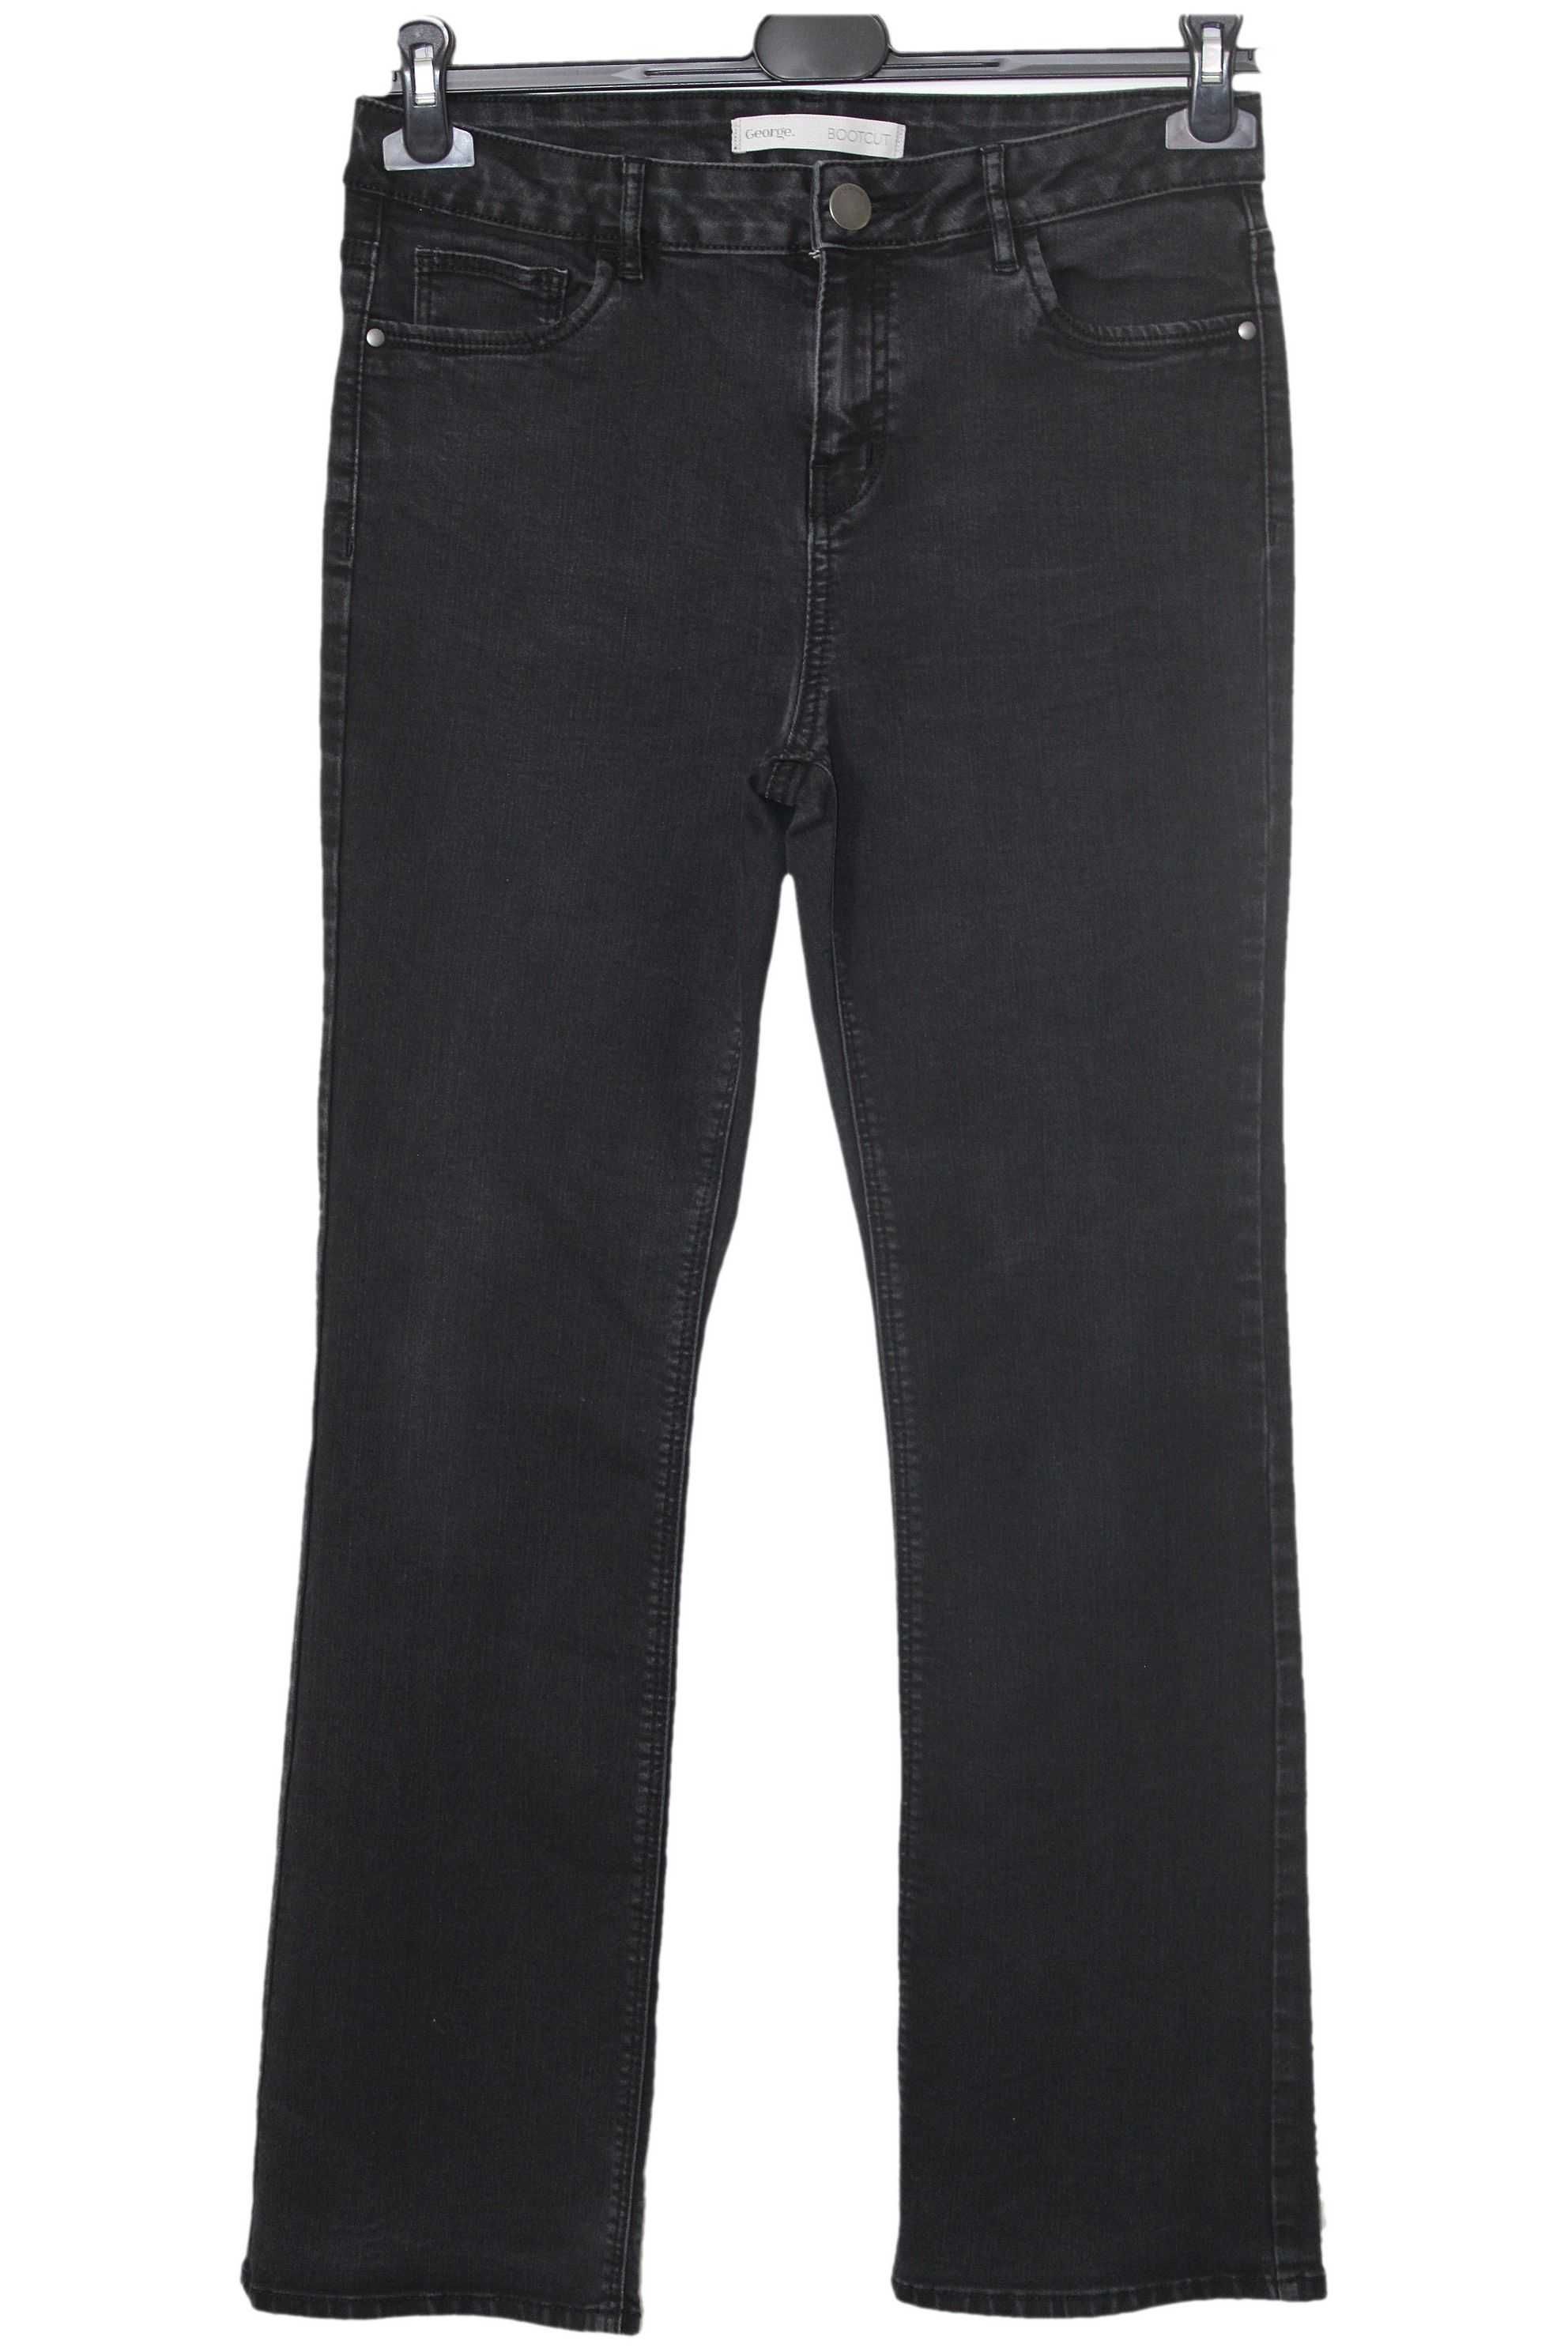 y4 GEORGE Damskie Czarne Spodnie Jeans Bootcut 40 L